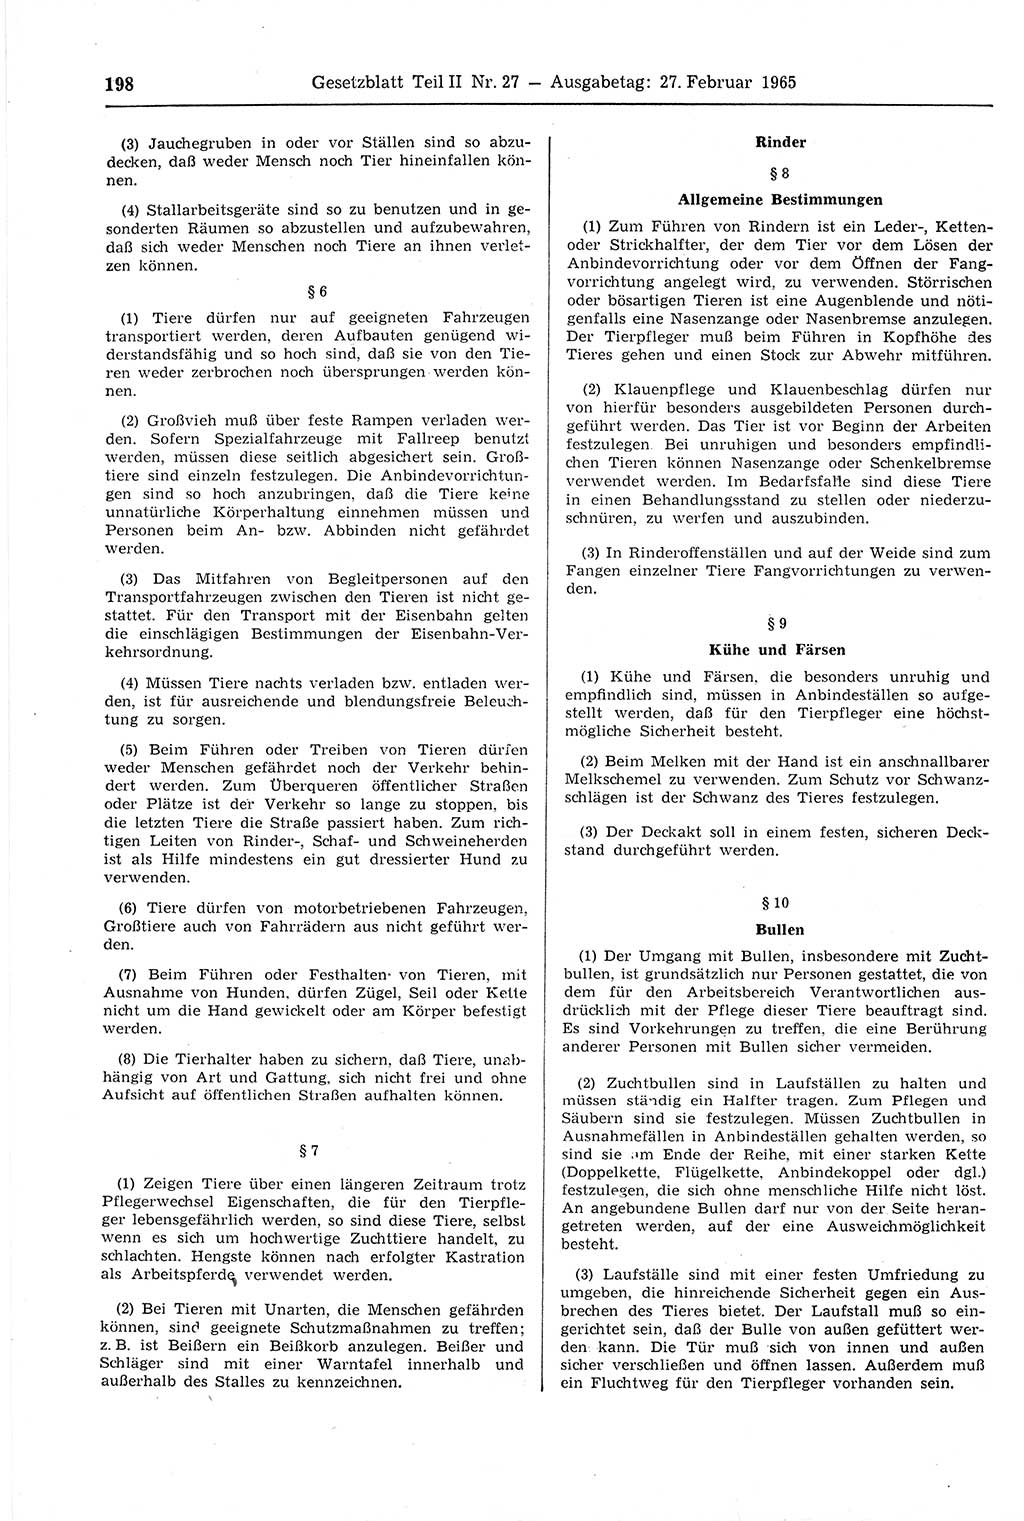 Gesetzblatt (GBl.) der Deutschen Demokratischen Republik (DDR) Teil ⅠⅠ 1965, Seite 198 (GBl. DDR ⅠⅠ 1965, S. 198)